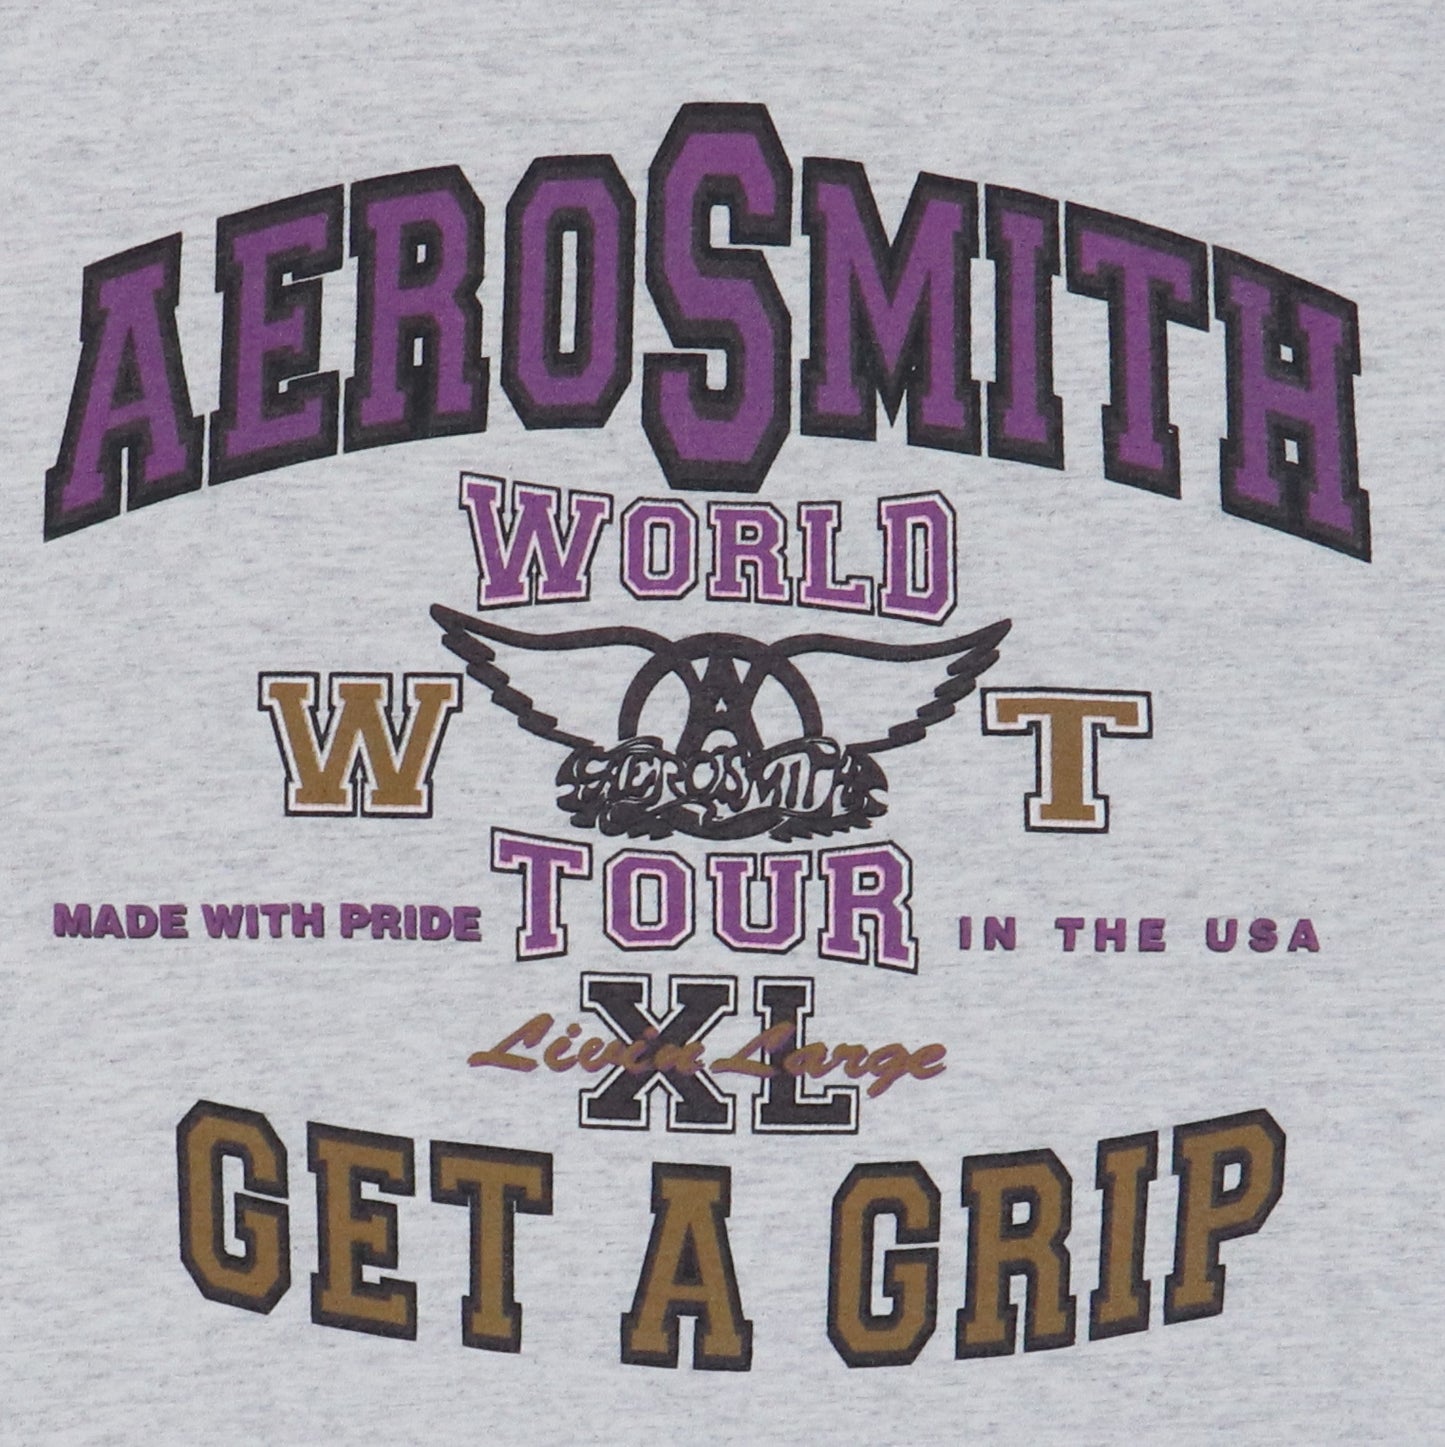 1993 Aerosmith Get A Grip World Tour Shirt